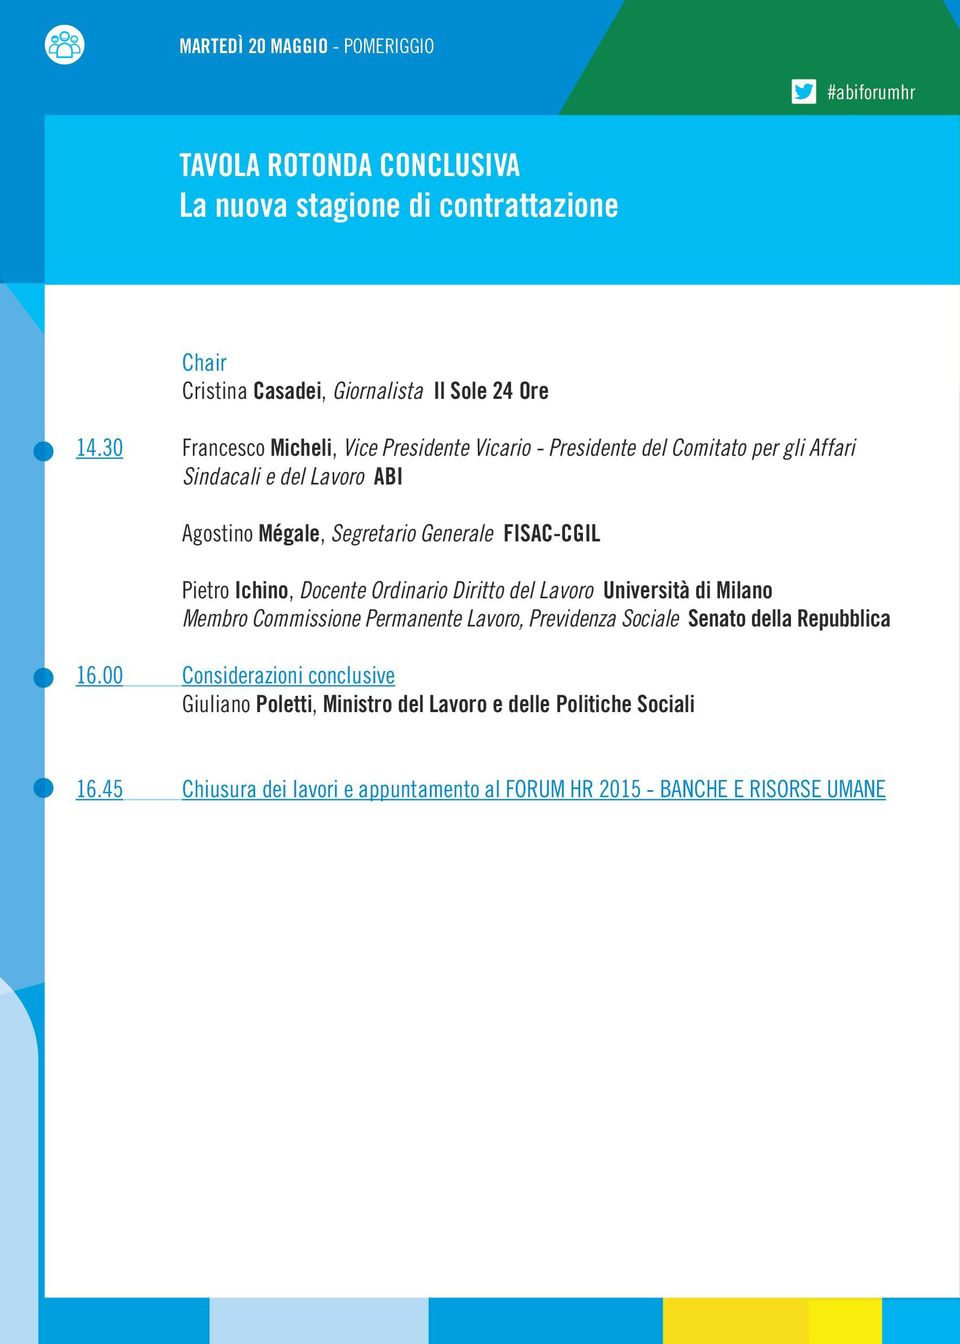 FISAC-CGIL Pietro Ichino, Docente Ordinario Diritto del Lavoro Università di Milano Membro Commissione Permanente Lavoro, Previdenza Sociale Senato della